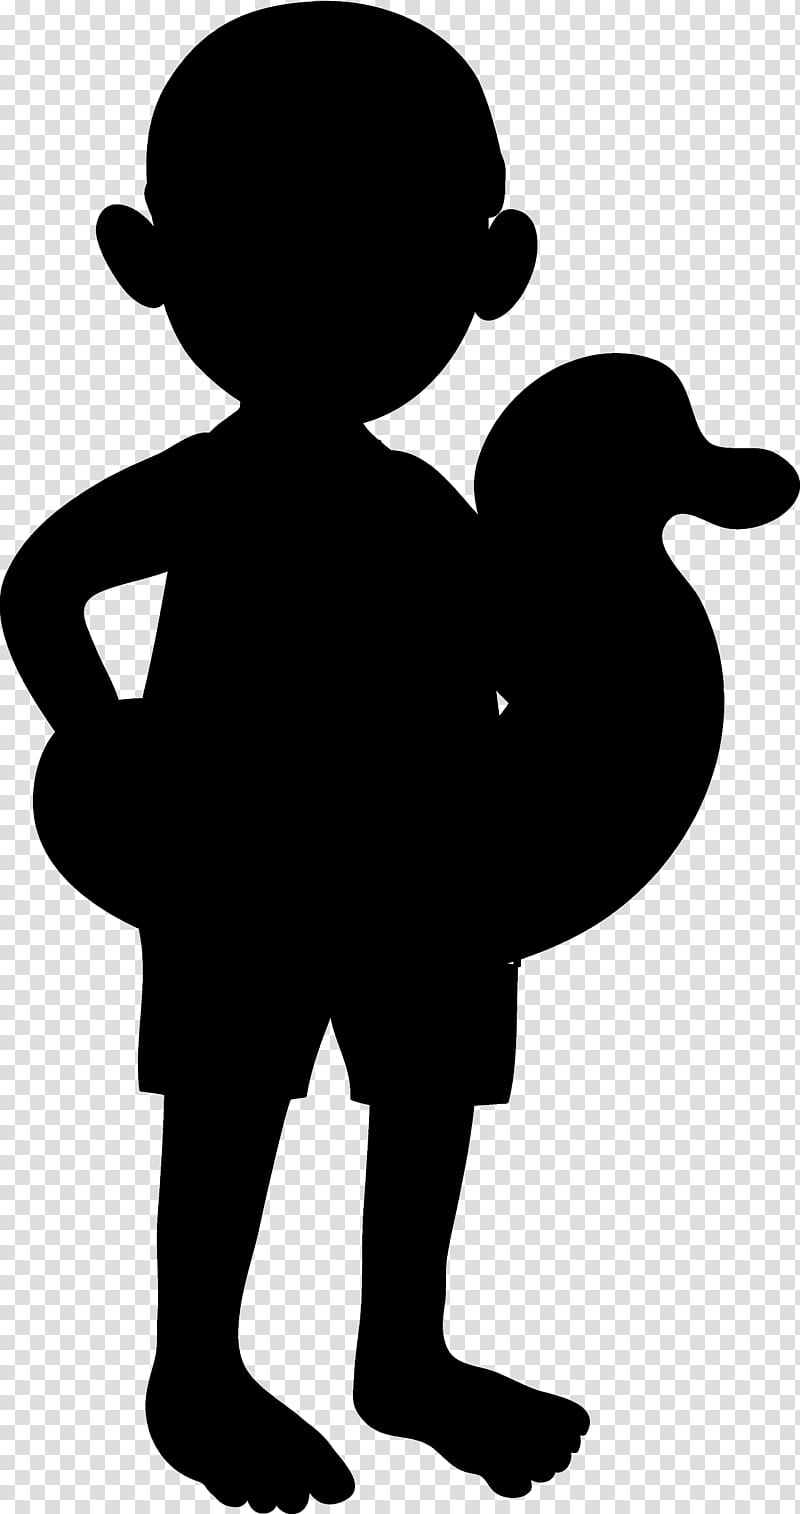 Duck, Silhouette, Sporcle, Person, Rabbit Rabbit Rabbit, QUIZ, Idea, Character transparent background PNG clipart